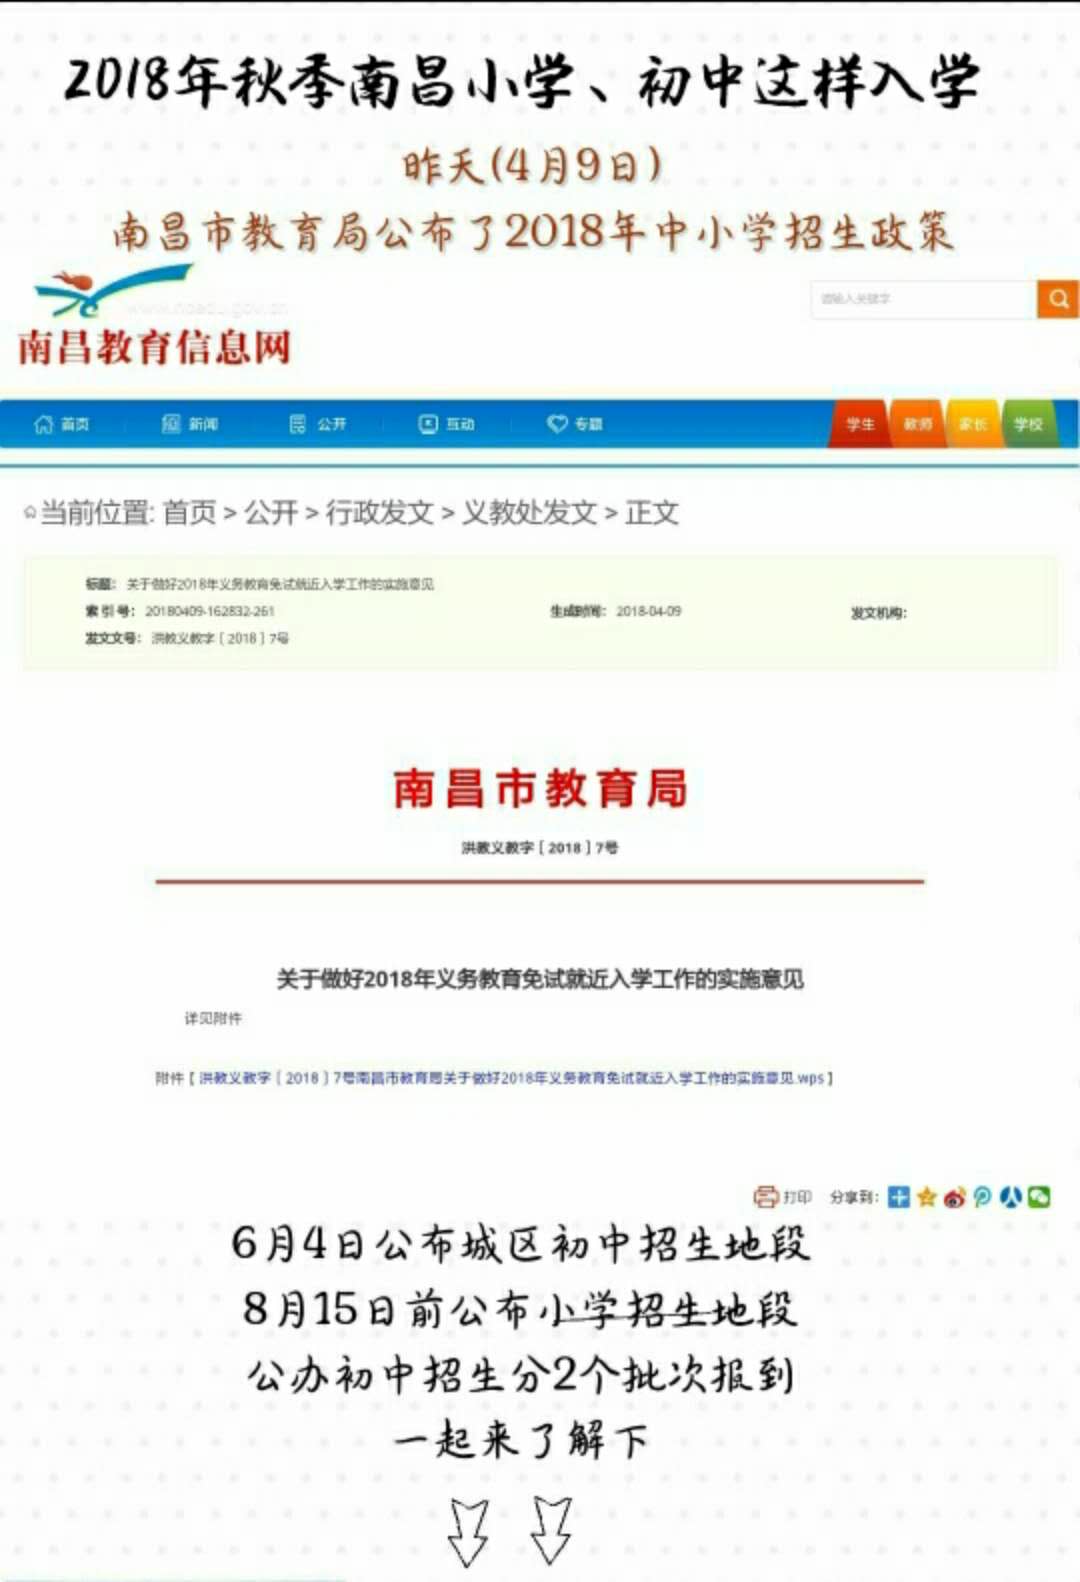 南昌市教育局发布2018义务教育免试就近入学工作实施的意见